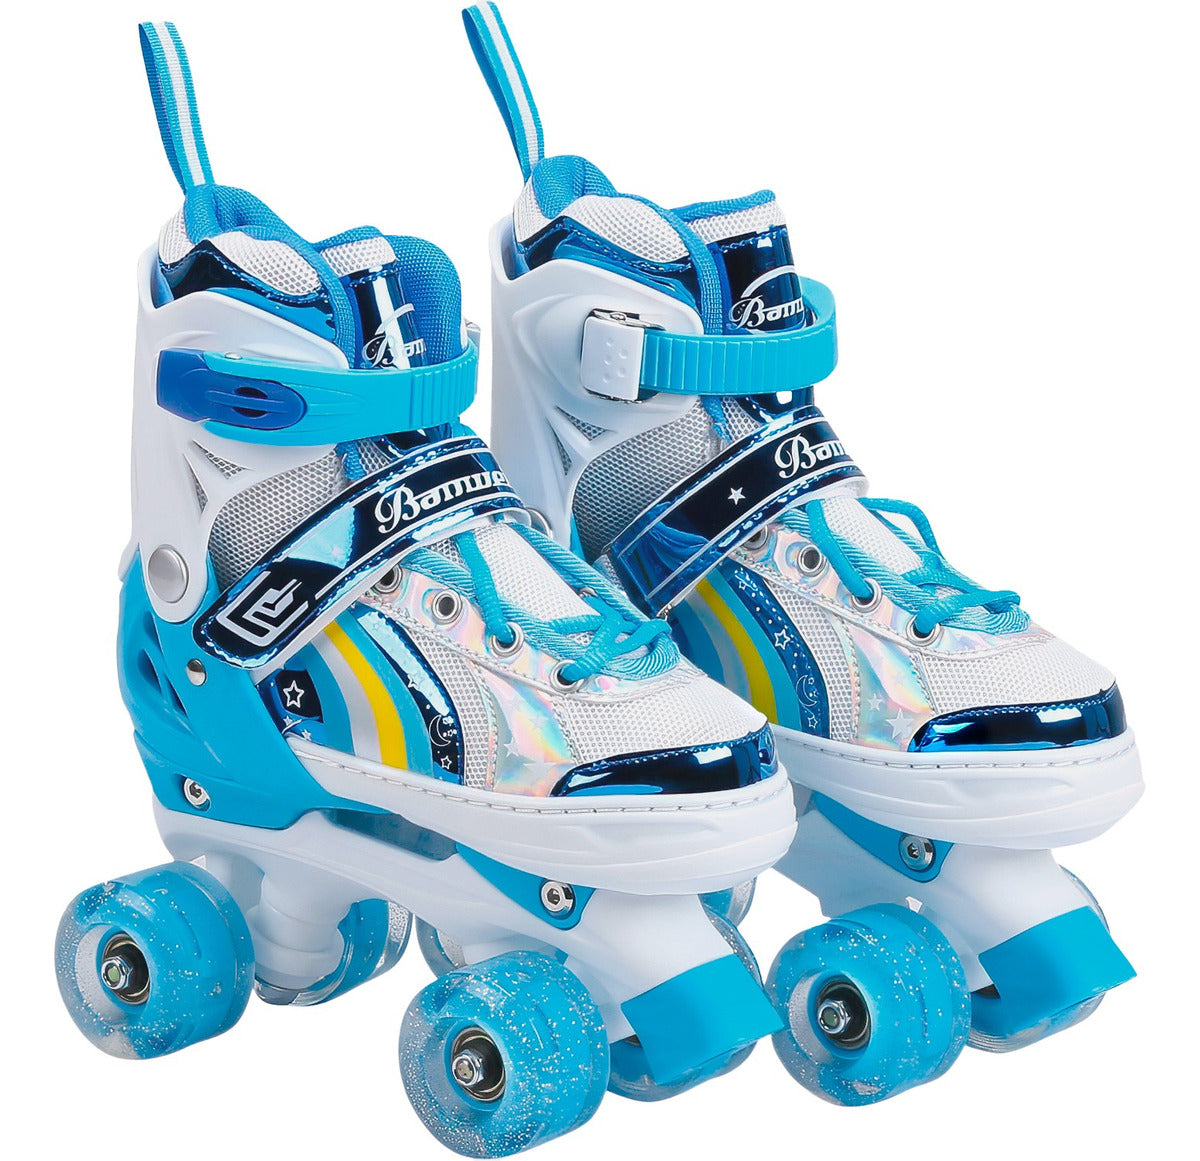 Ptines de patinaje sobre ruedas para niño y niña, patines de